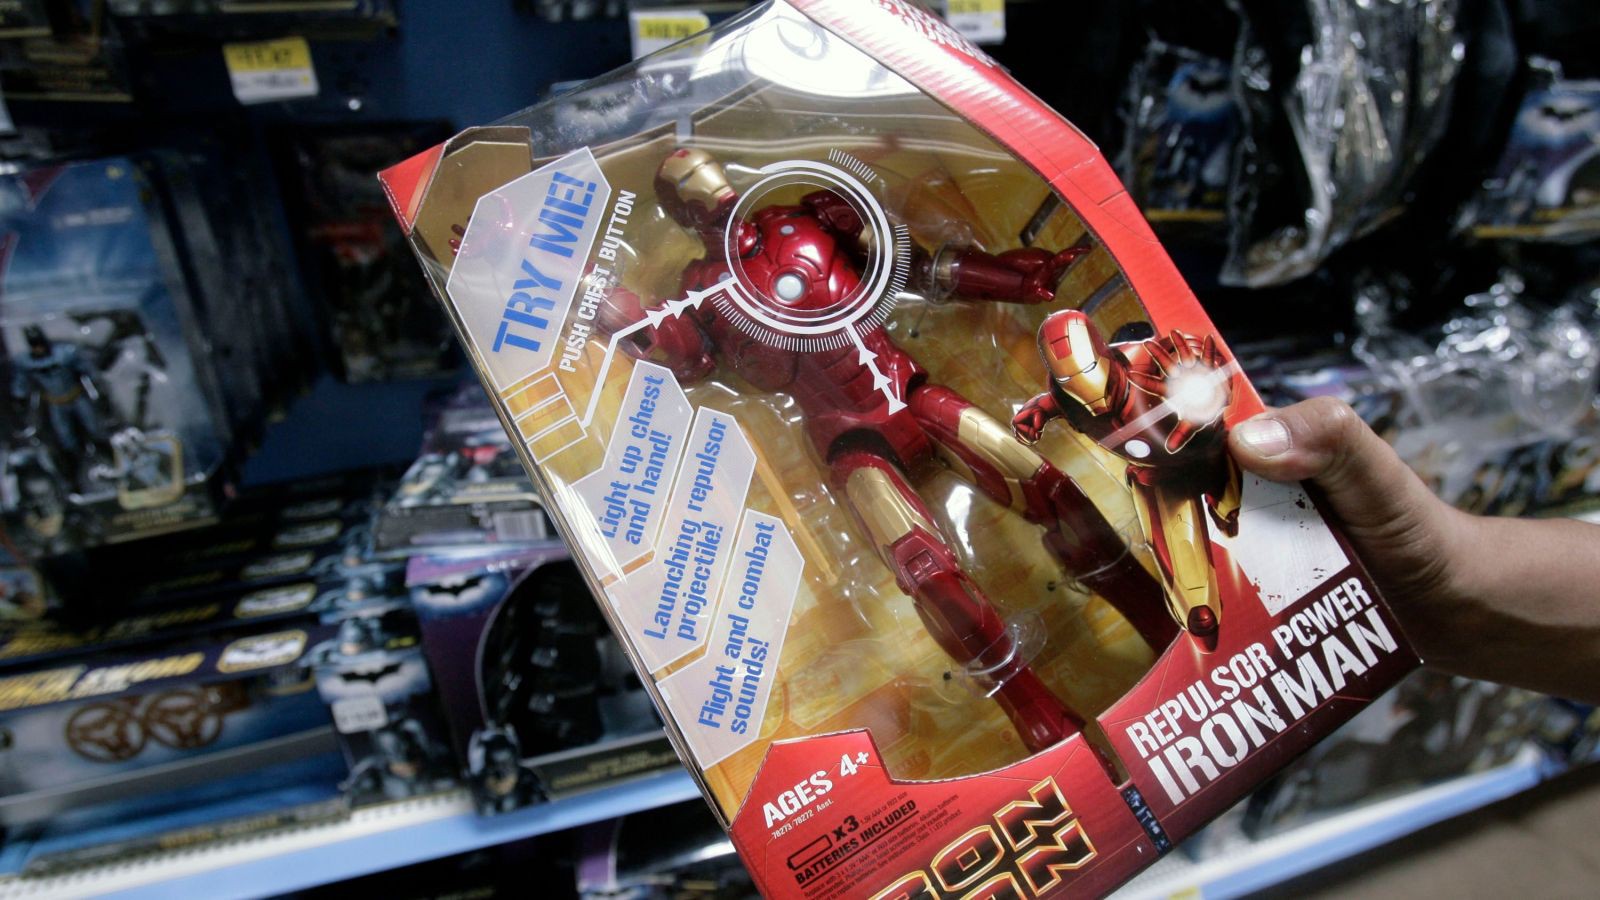 Tin tưởng vào các Thượng Đế nhí, Marvel đã chọn Iron Man làm phim mở đầu kỷ nguyên siêu anh hùng trên màn ảnh - Ảnh 3.